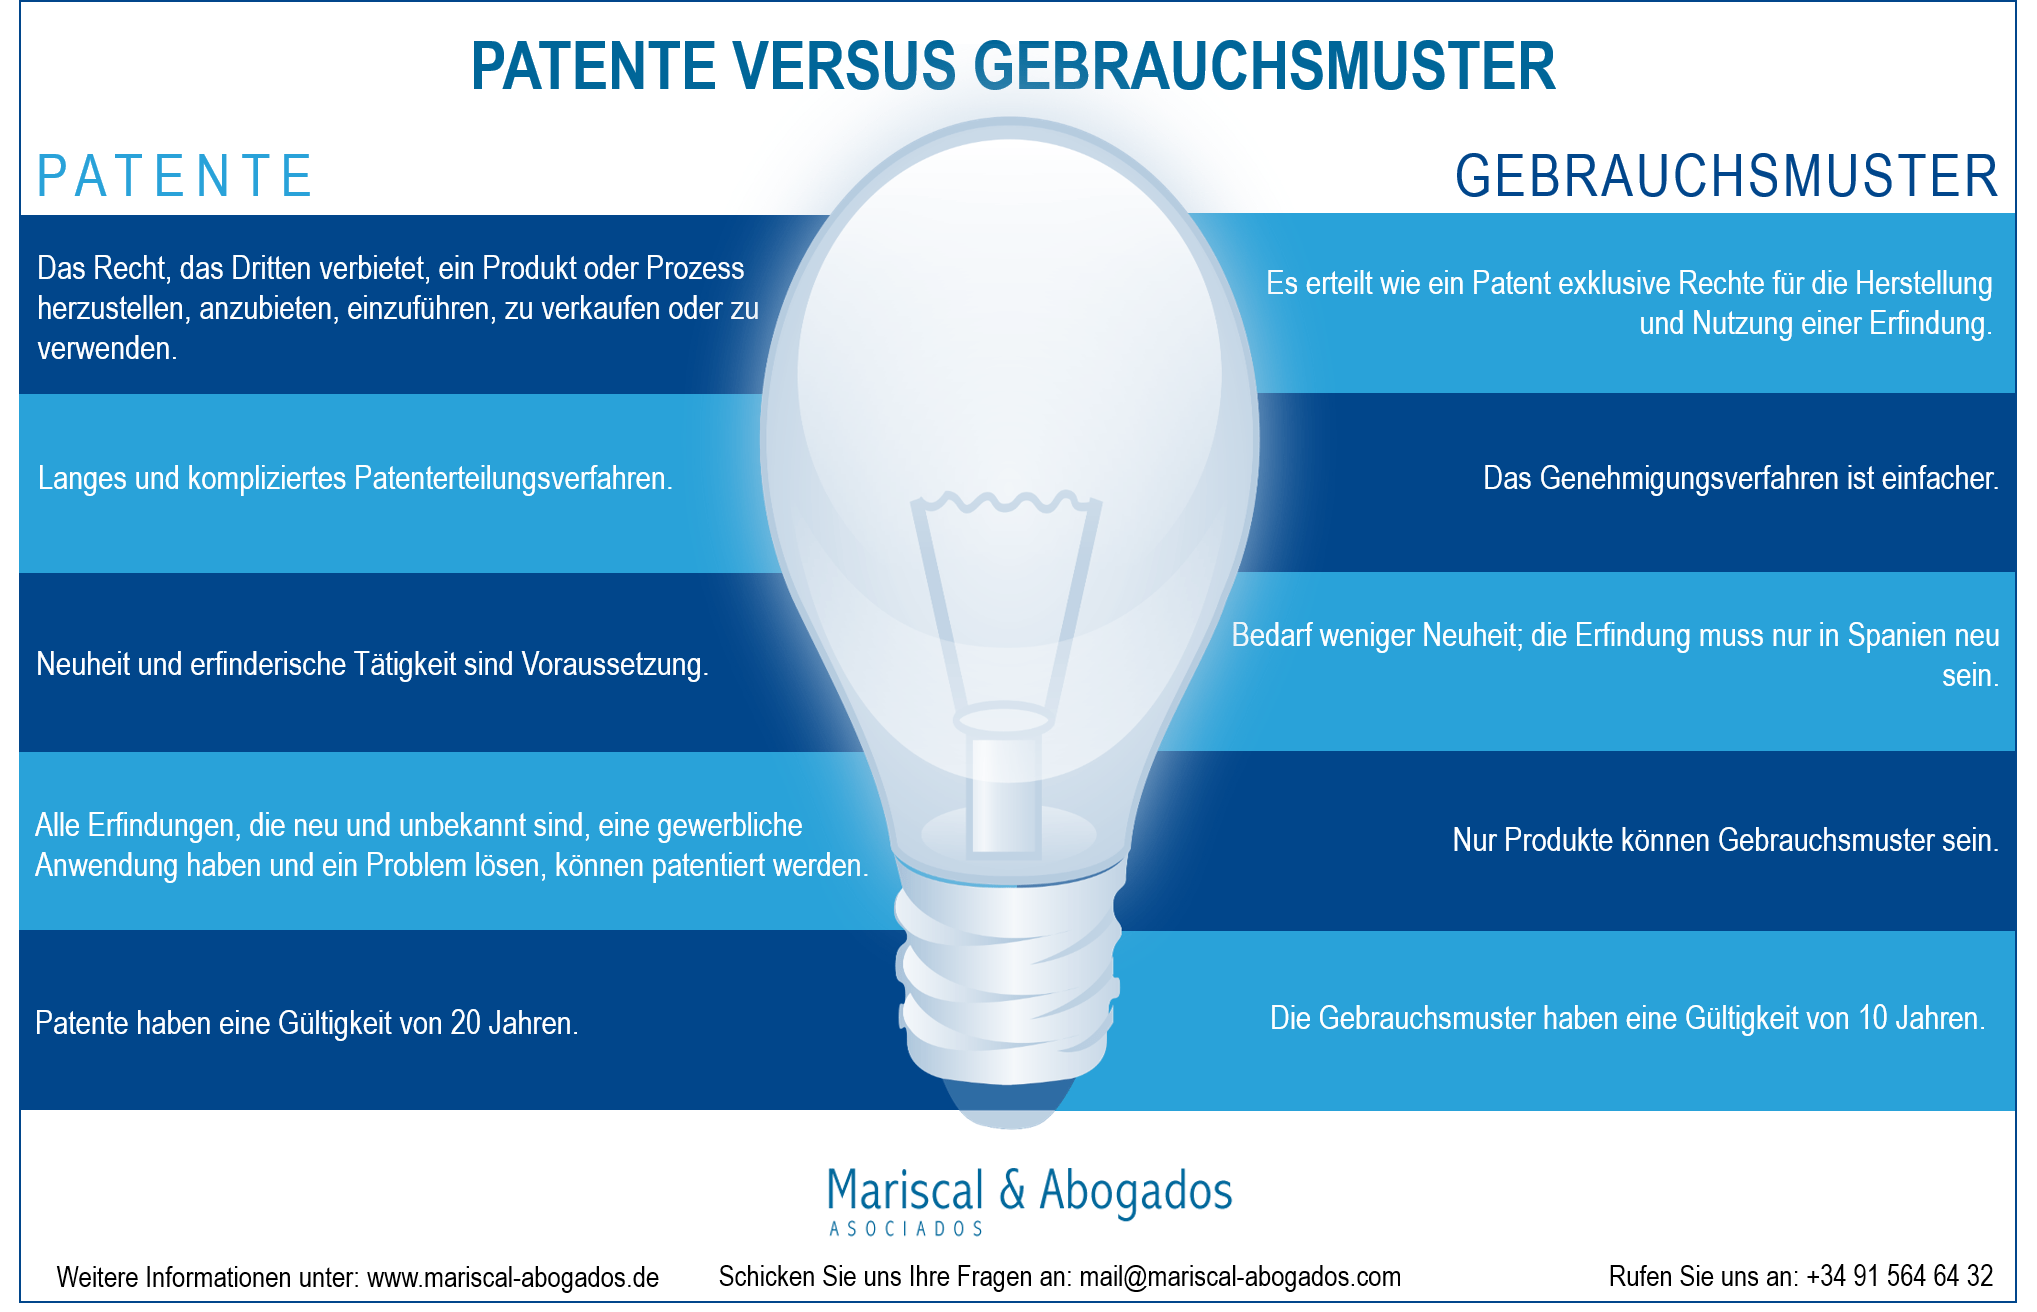 Patenterteilung versus Gebrauchsmuster